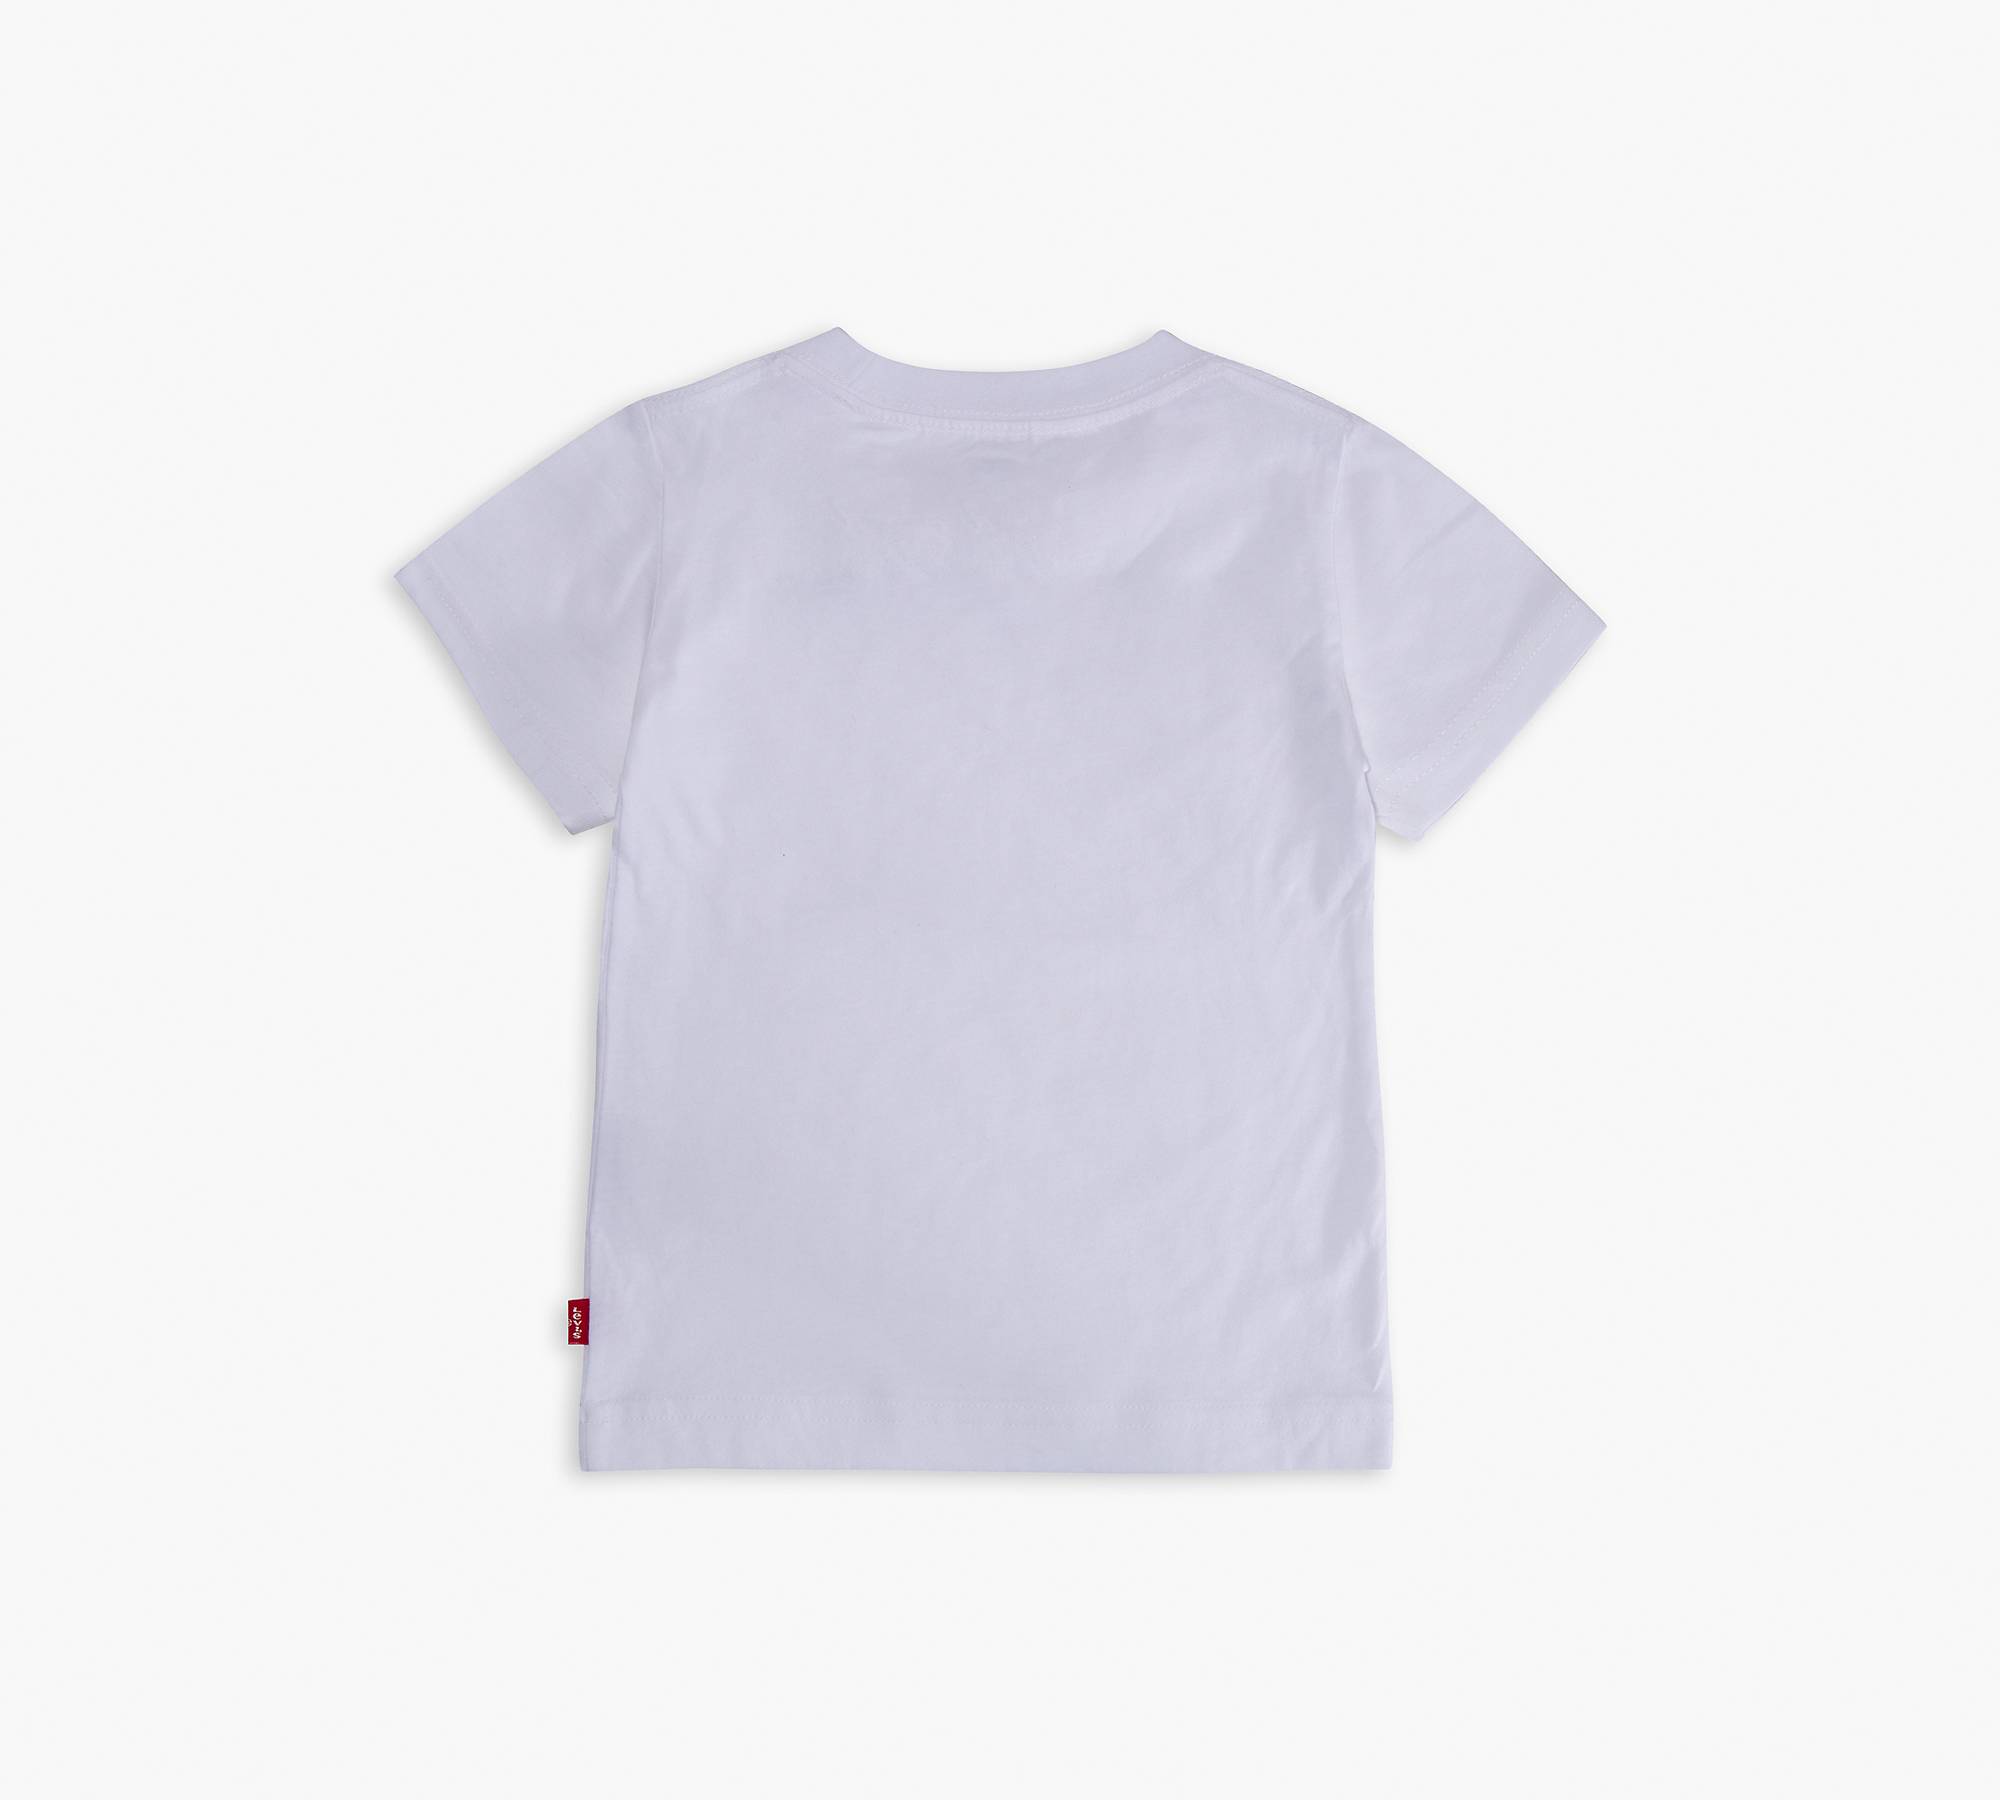 Toddler Boys 2t-4t Levi’s® Serif Tee Shirt - White | Levi's® US